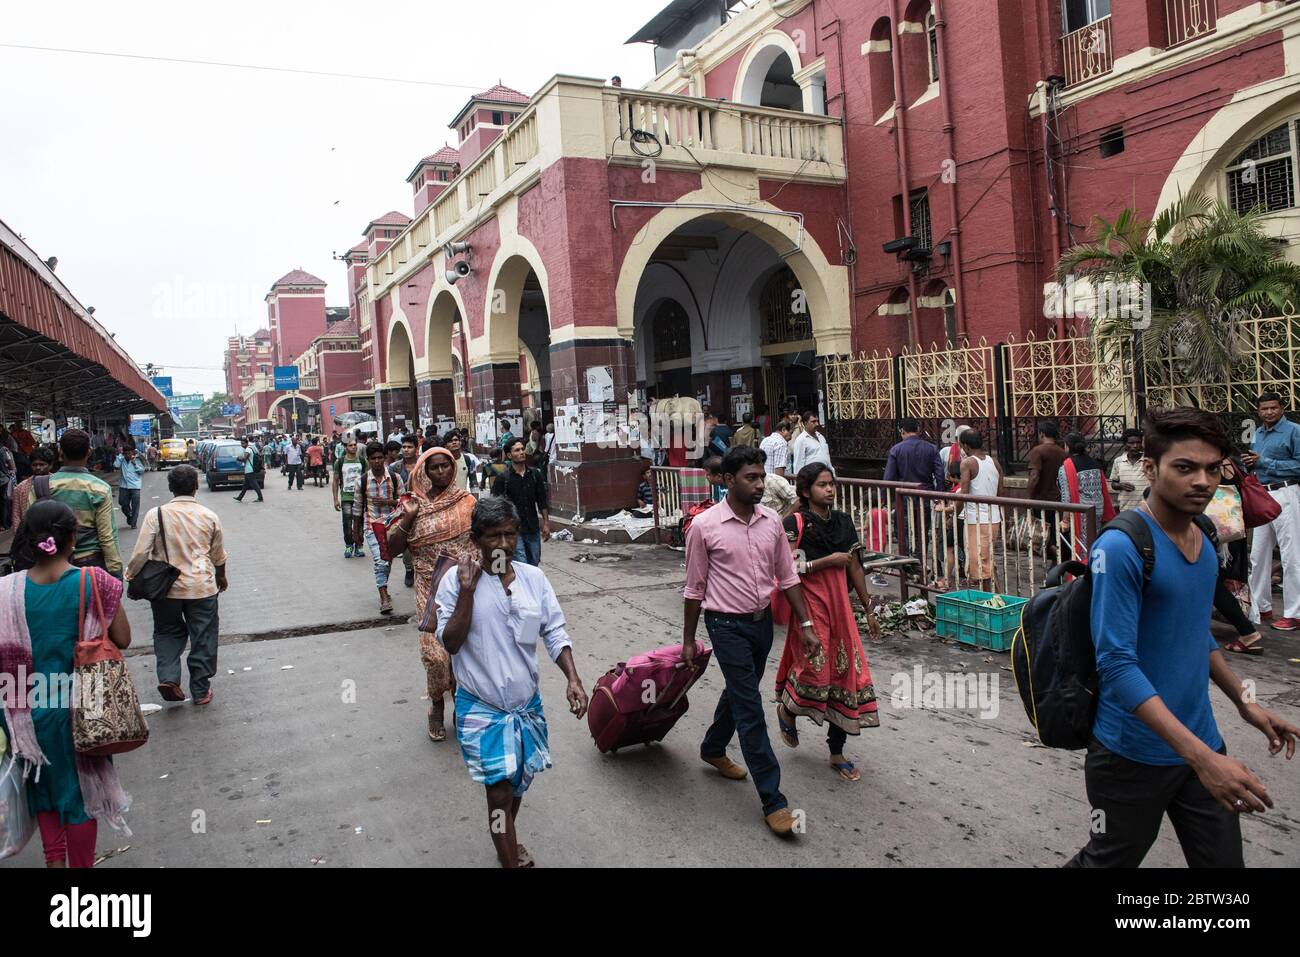 Howrah Junction, la gare, bondée et occupée avec des navetteurs. Chemins de fer indiens. Voyage en train. Howrah, Kolkata, Inde Banque D'Images